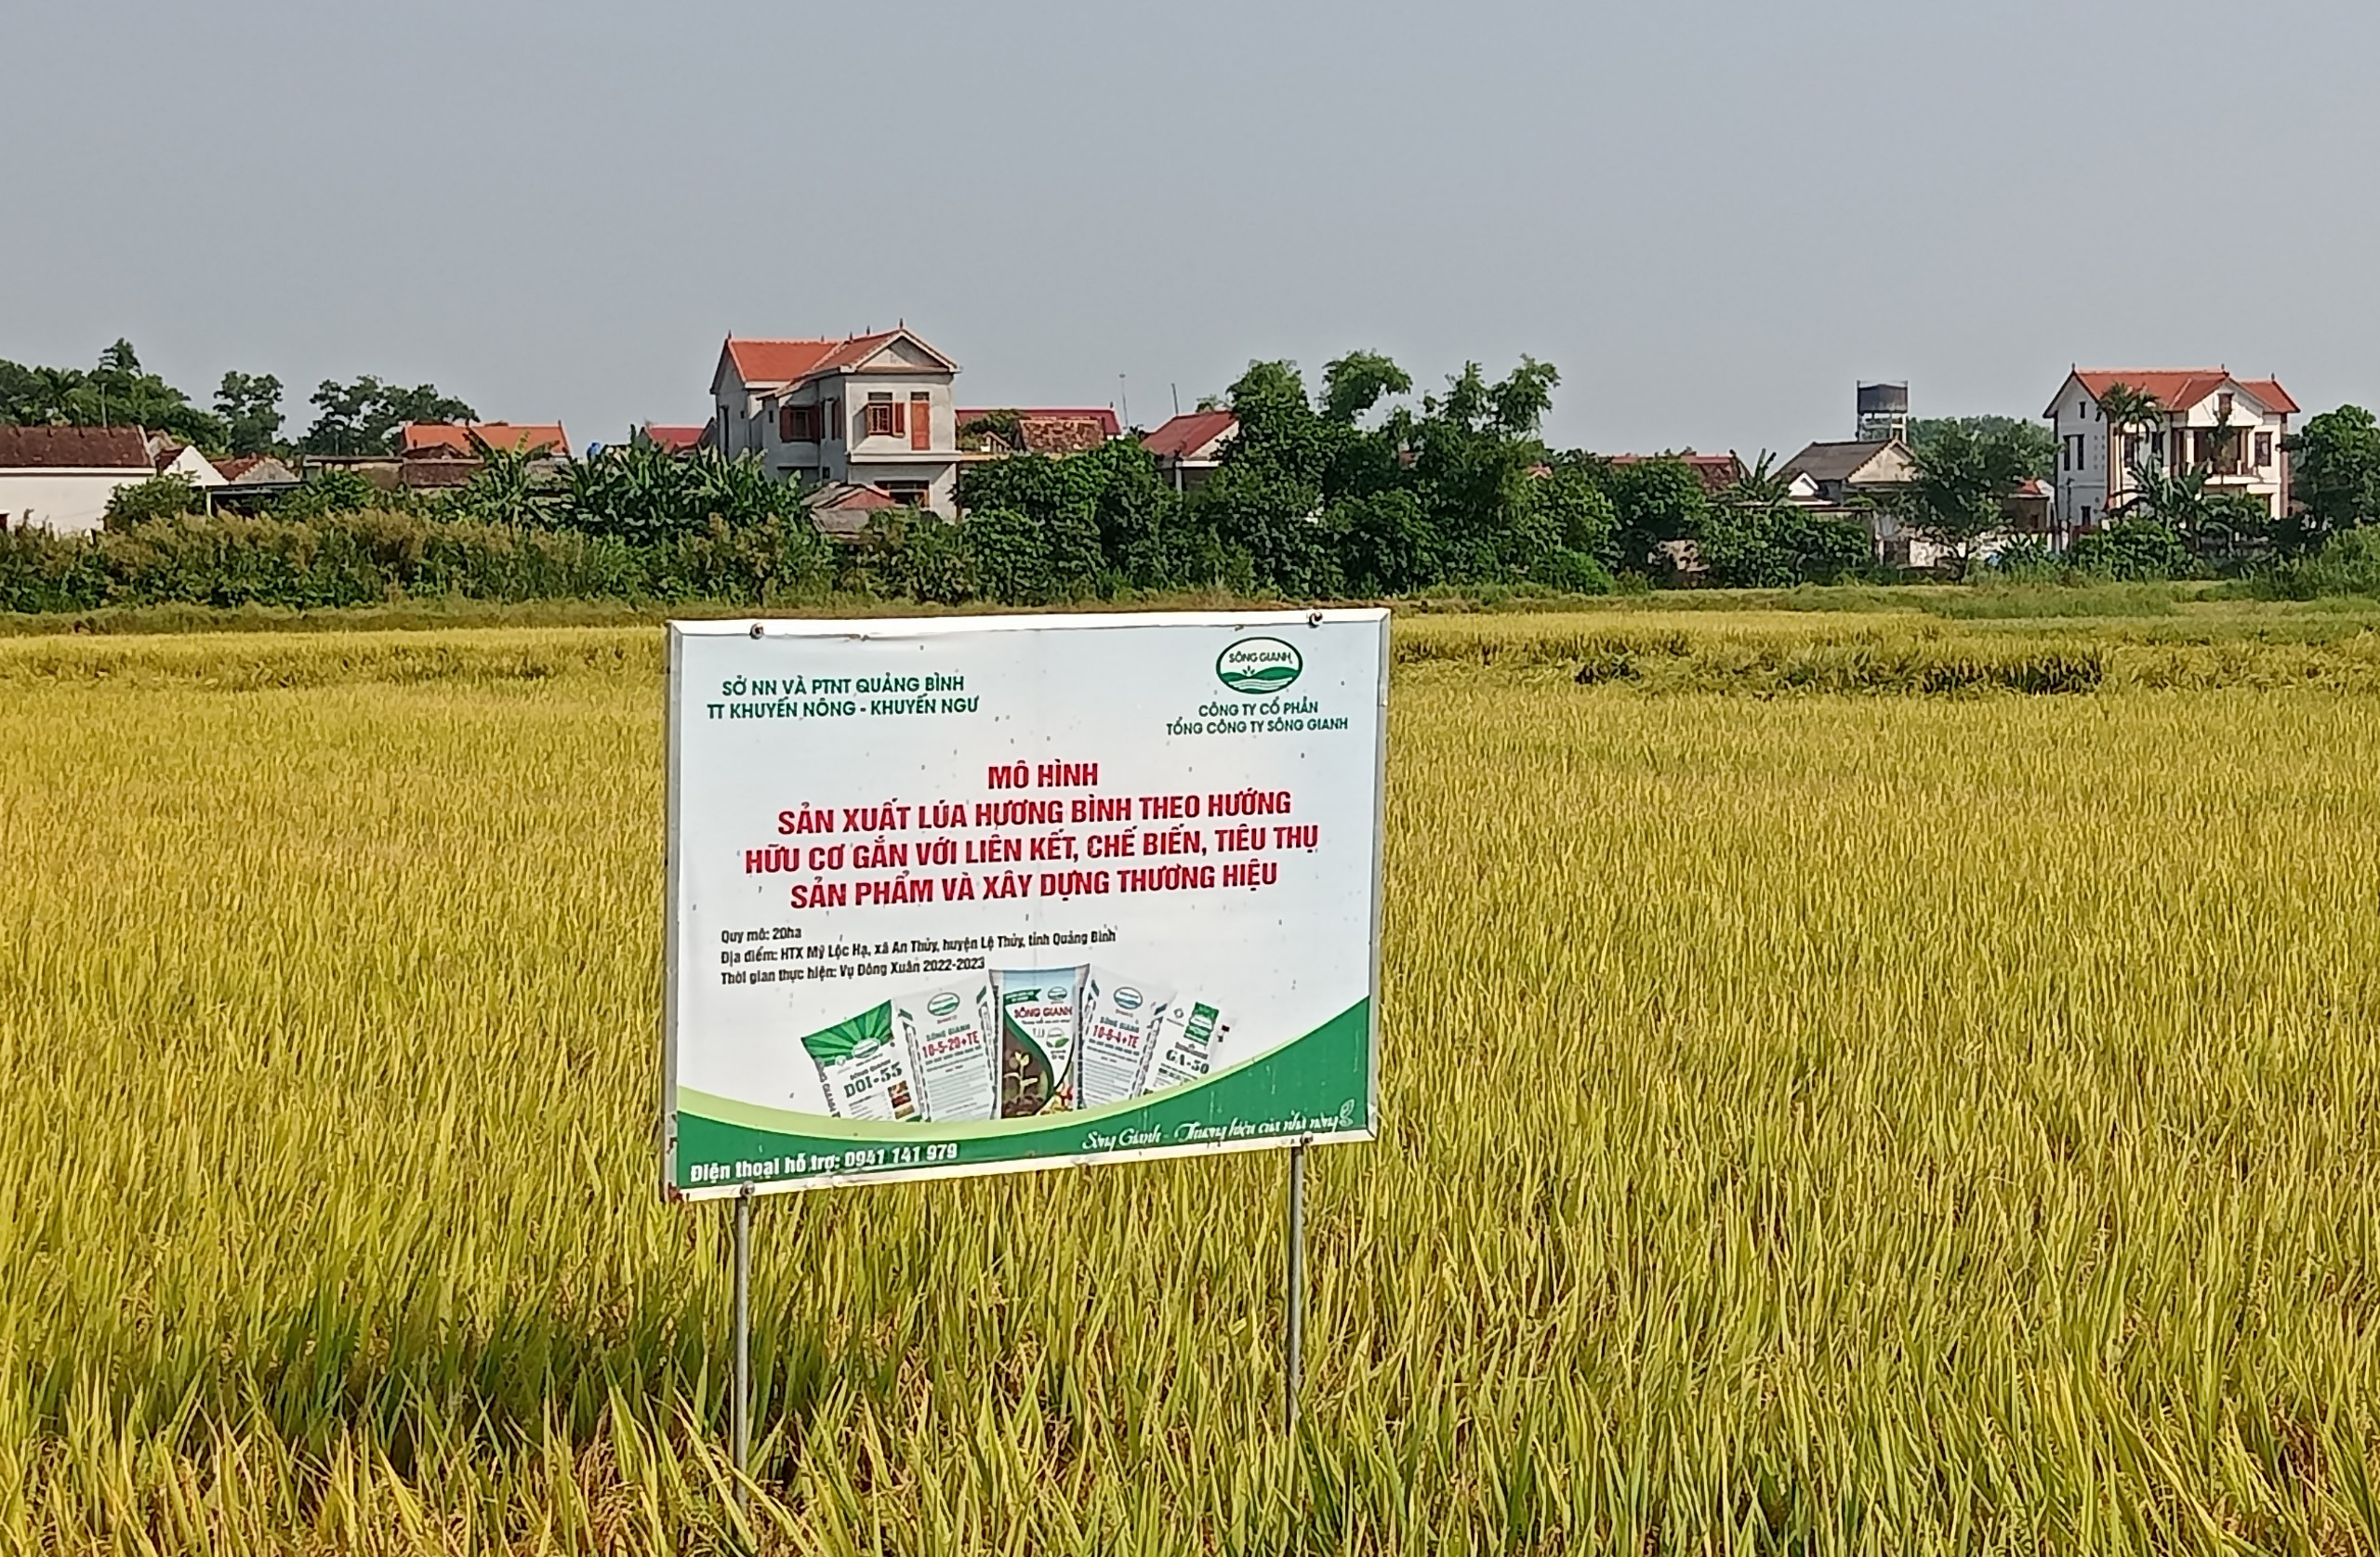 Mô hình sản xuất lúa chất lượng cao Hương Bình theo hướng hữu cơ gắn với liên kết, chế biến và tiêu thụ sản phẩm được triển khai trên diện tích 20 ha tại xã An Thủy (Lệ Thủy).